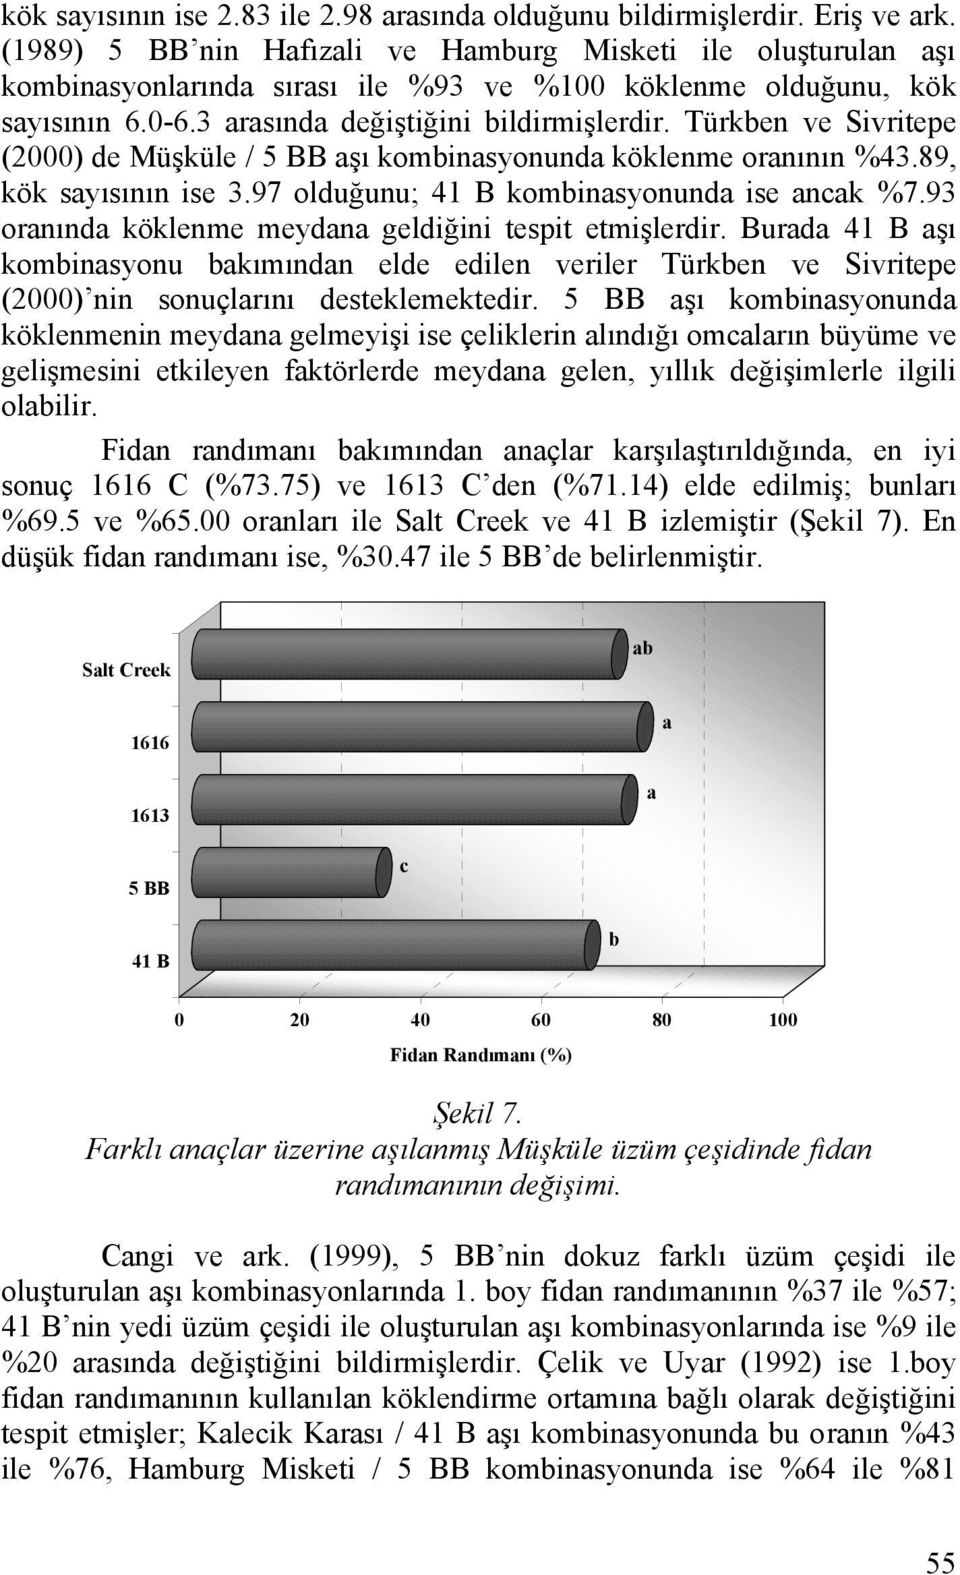 93 ornınd köklenme meydn geldiğini tespit etmişlerdir. Burd şı kominsyonu kımındn elde edilen veriler Türken ve Sivritepe (2000) nin sonuçlrını desteklemektedir.